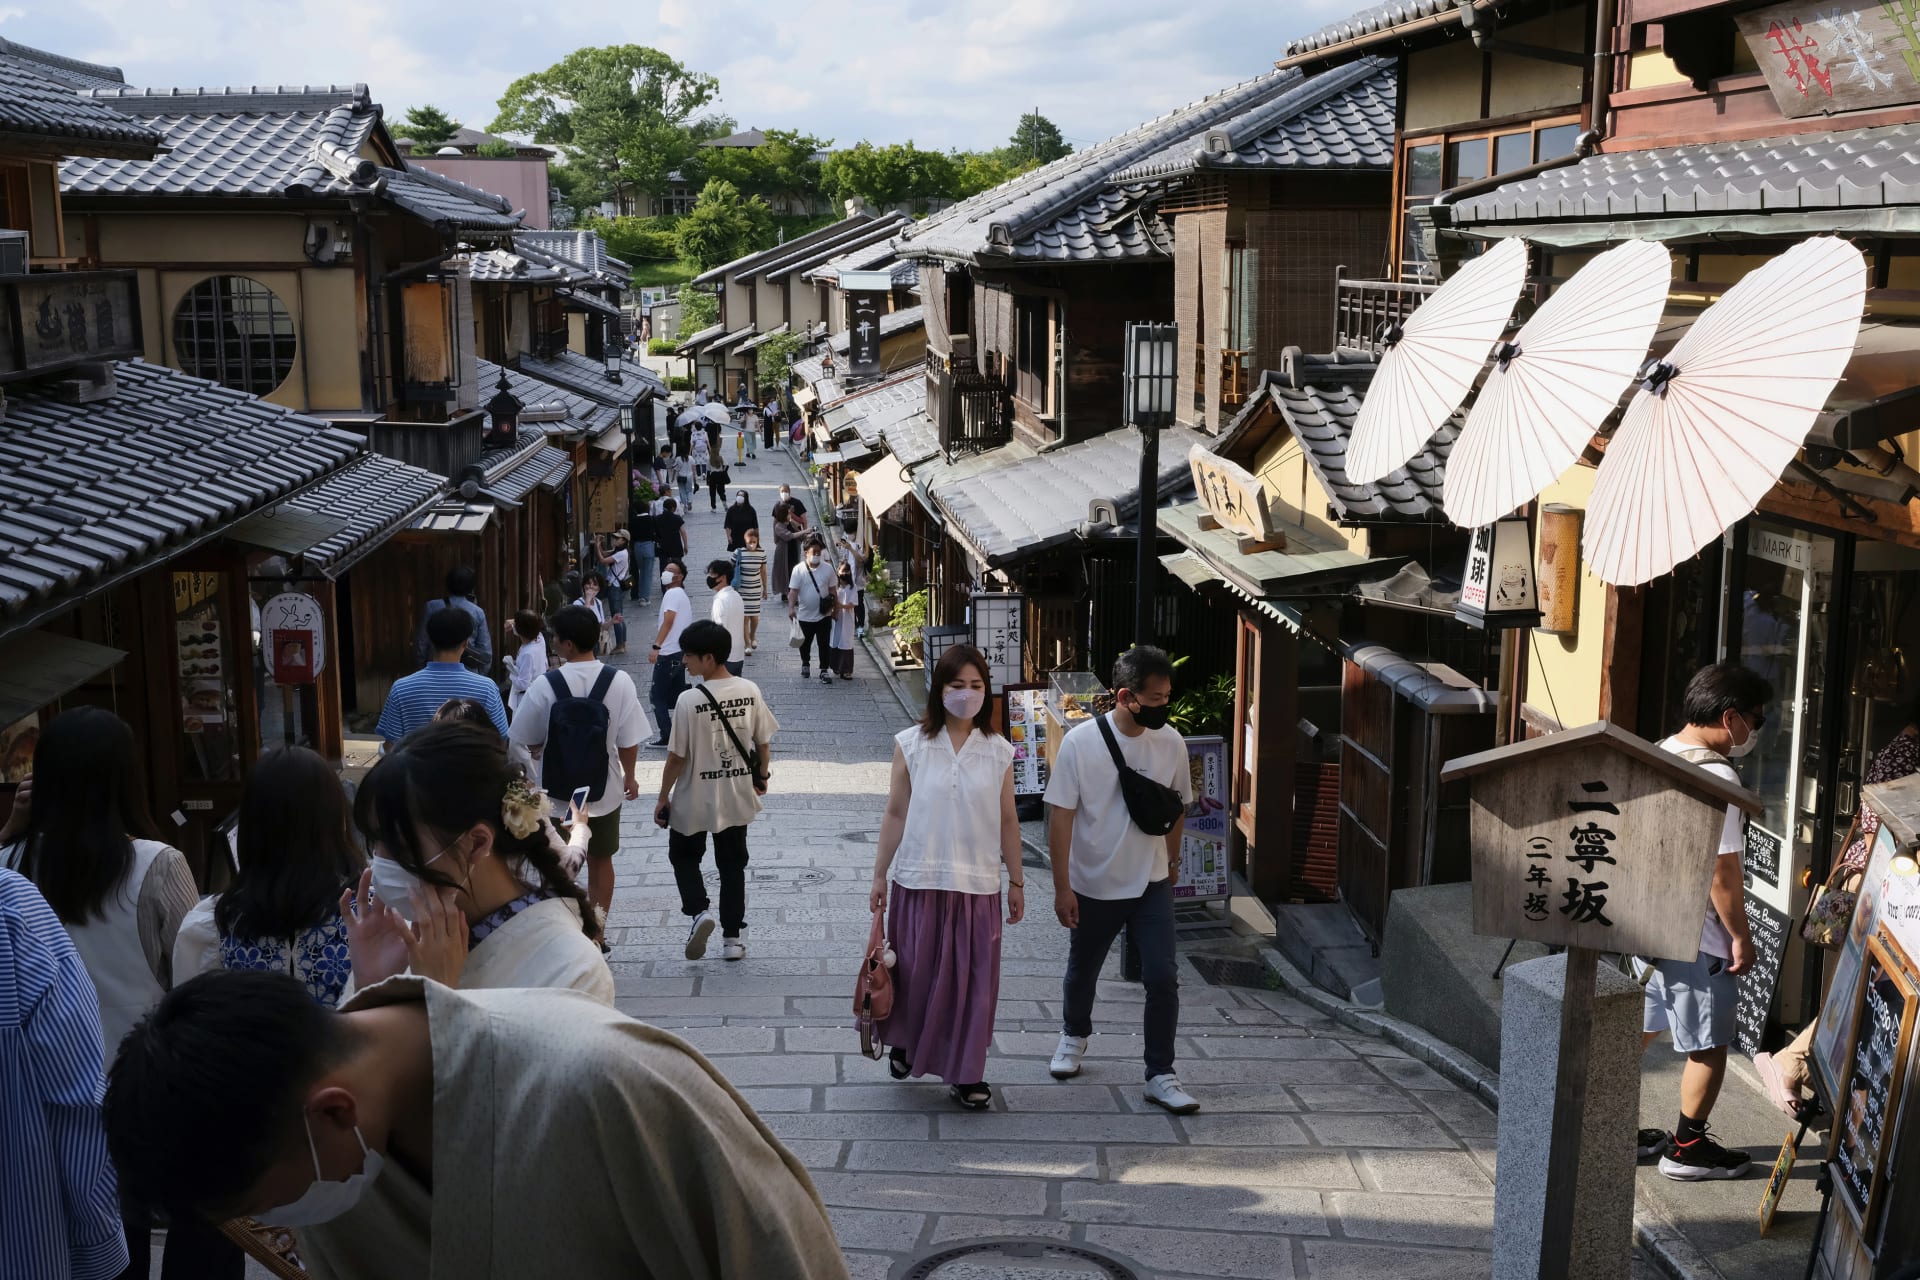 فتحت اليابان أبوابها للمسافرين ولكن.. ما سبب عدم عودة السياح حتّى الآن؟